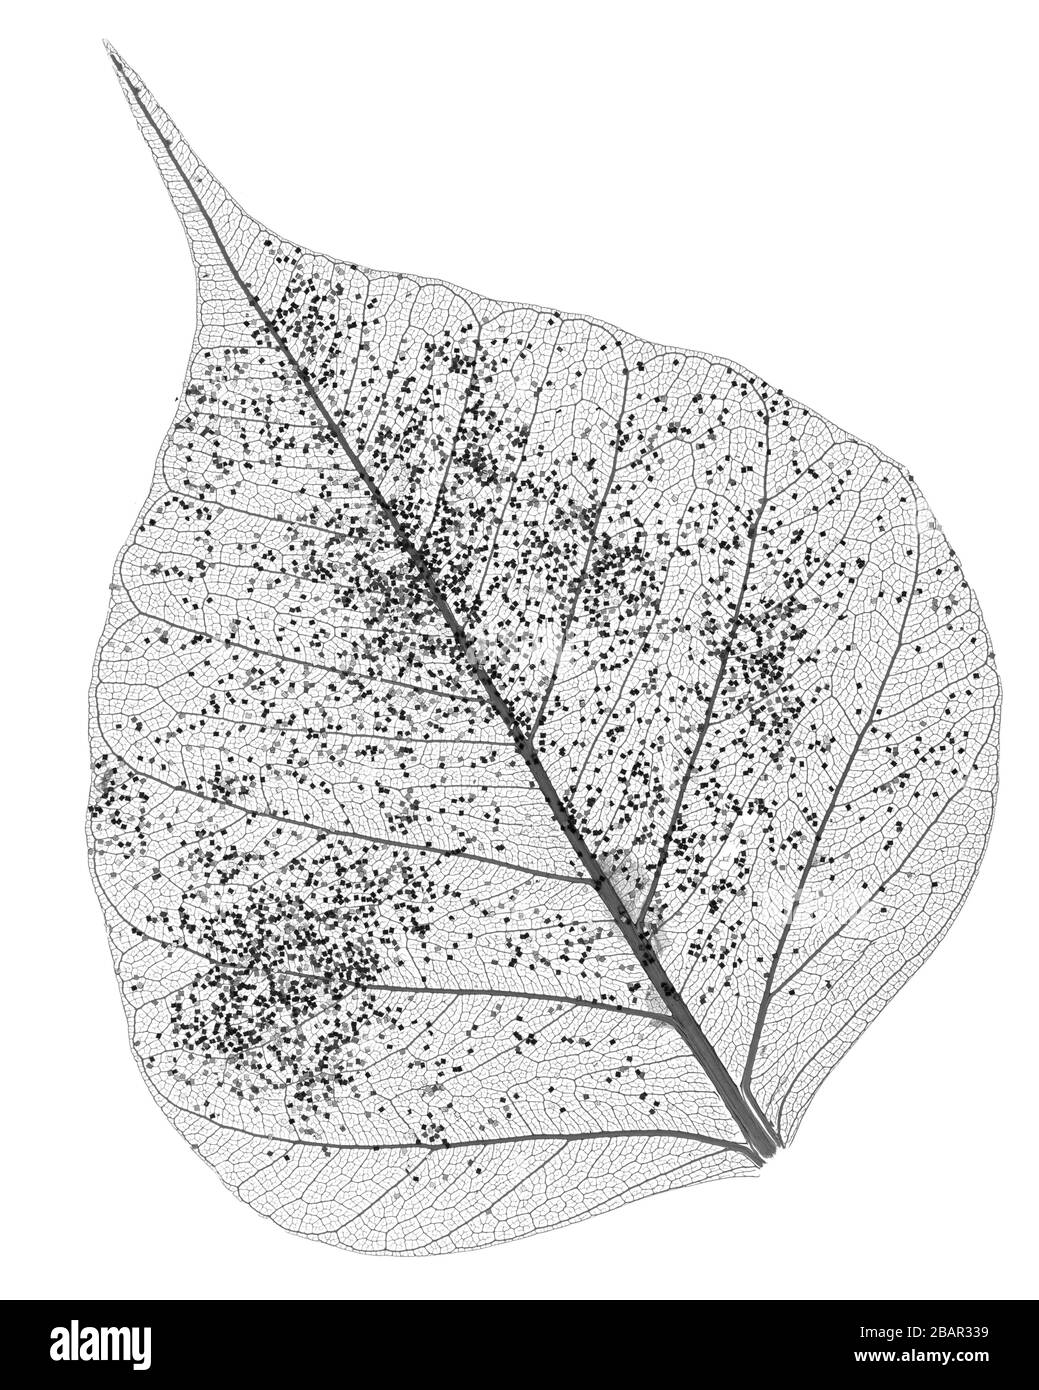 Single skeleton leaf isolated on white background Stock Photo